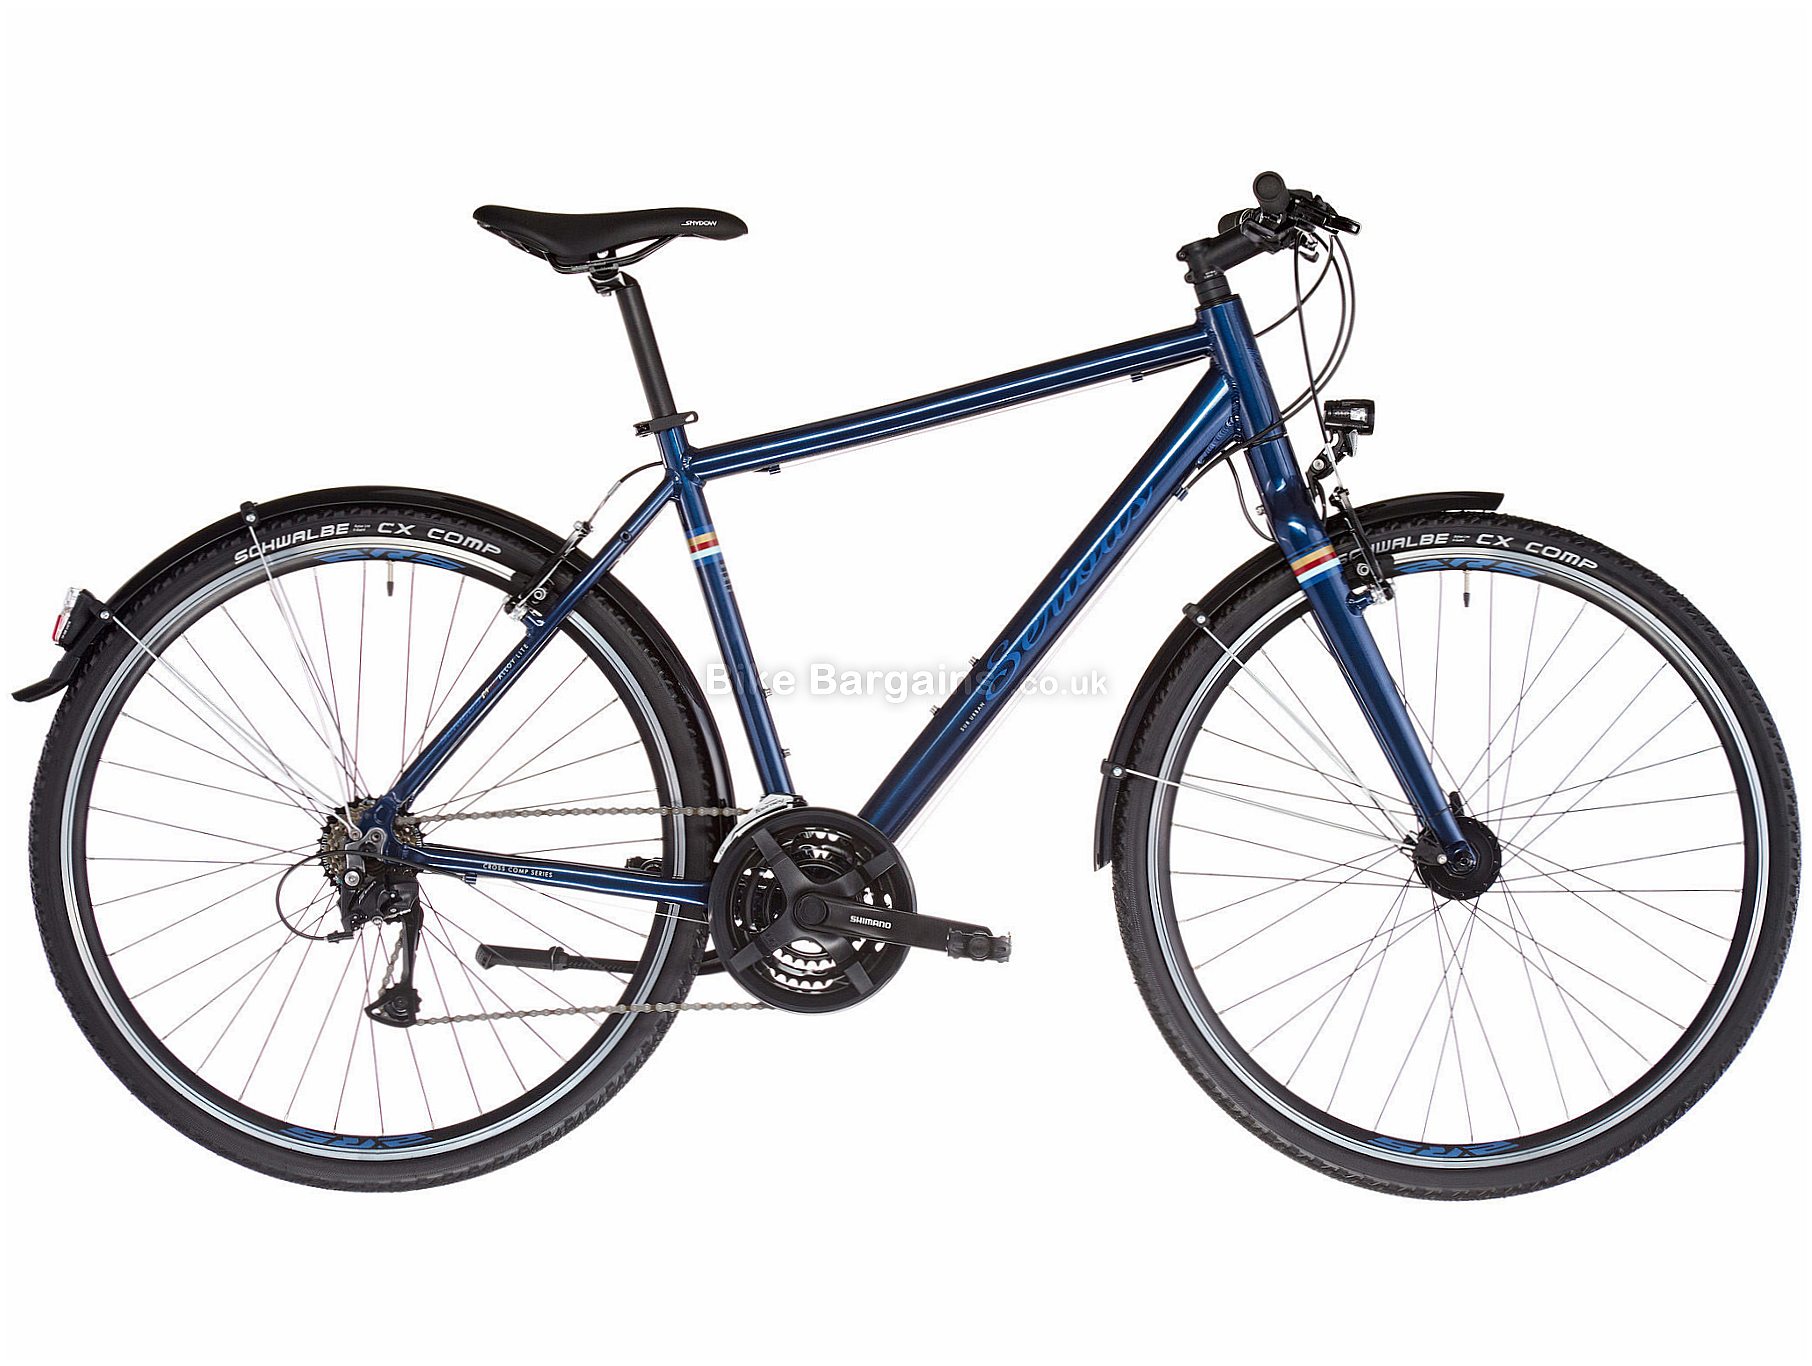 Serious Cedar S Hybrid - £364! | Hybrids & City Bikes